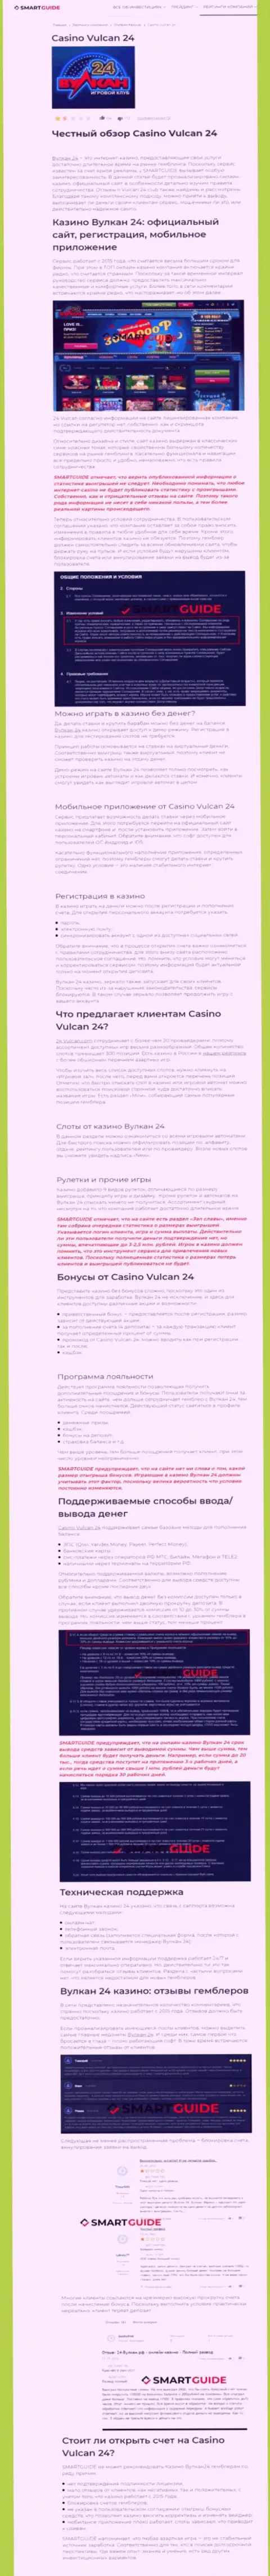 Вулкан 24 - это компания, зарабатывающая на грабеже вложенных денежных средств своих реальных клиентов (обзор мошеннических действий)